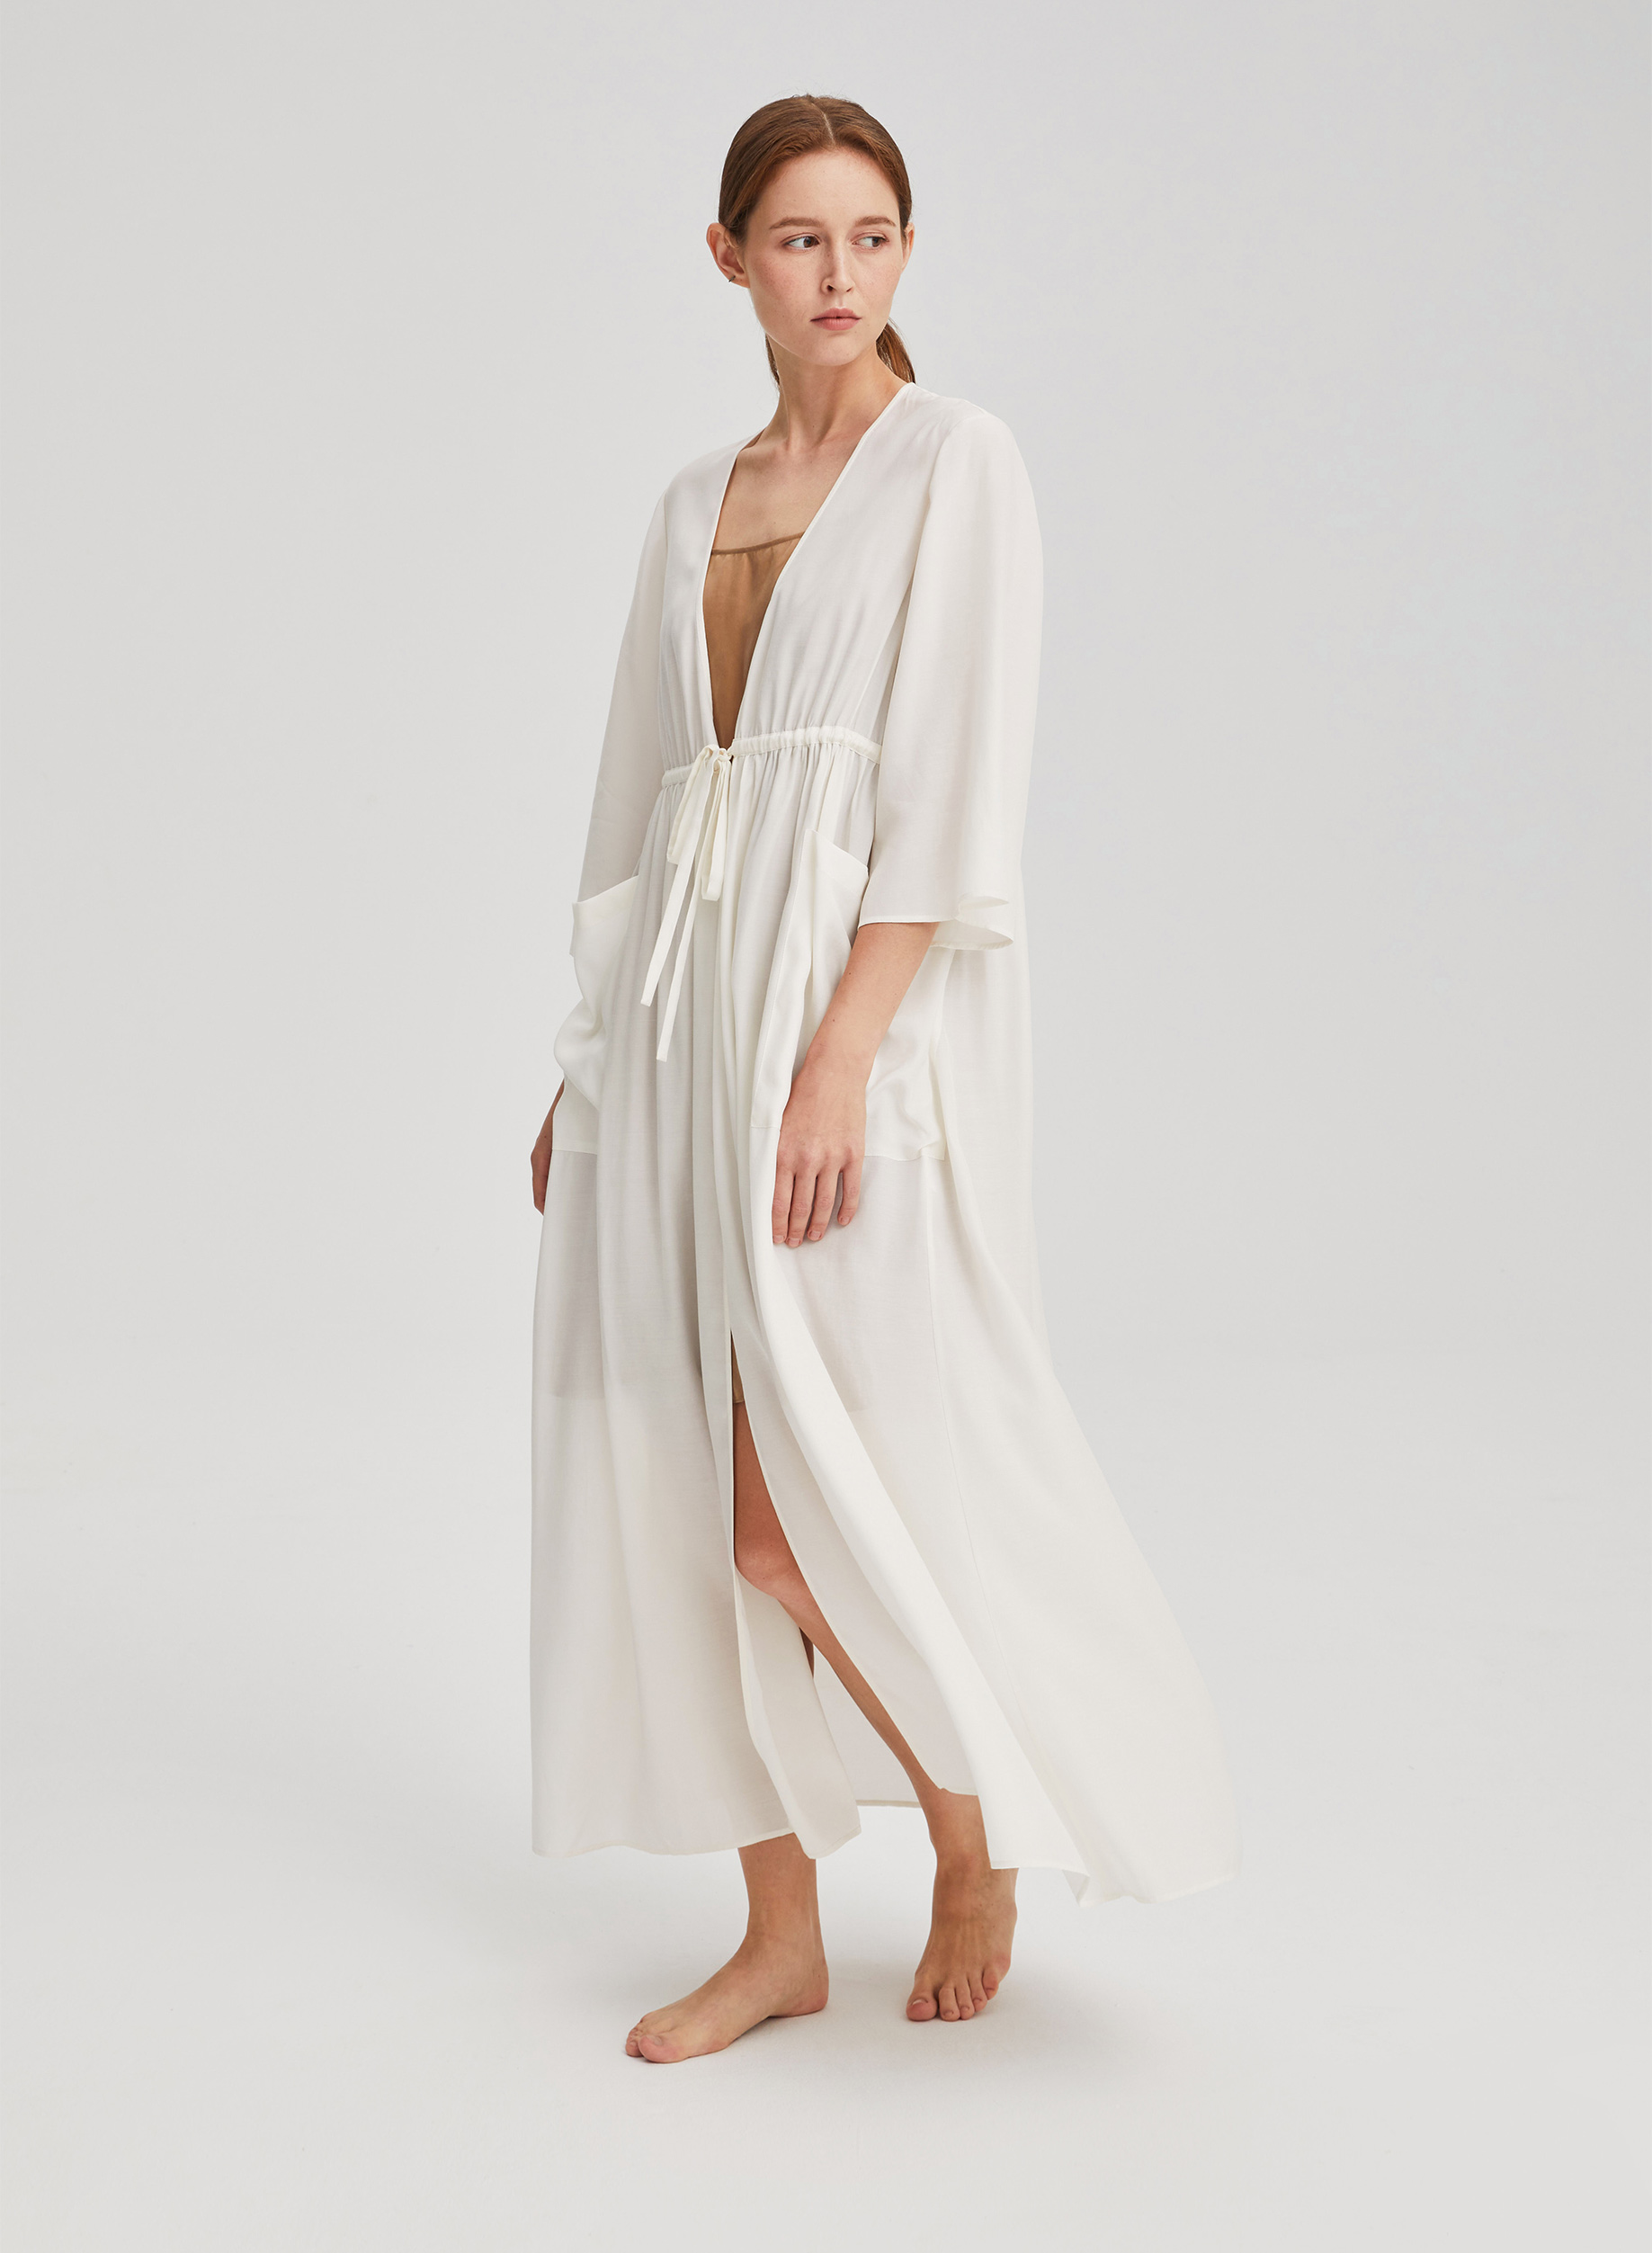 White Classic Kimono | Robe lifestyle Trends Drawstring in